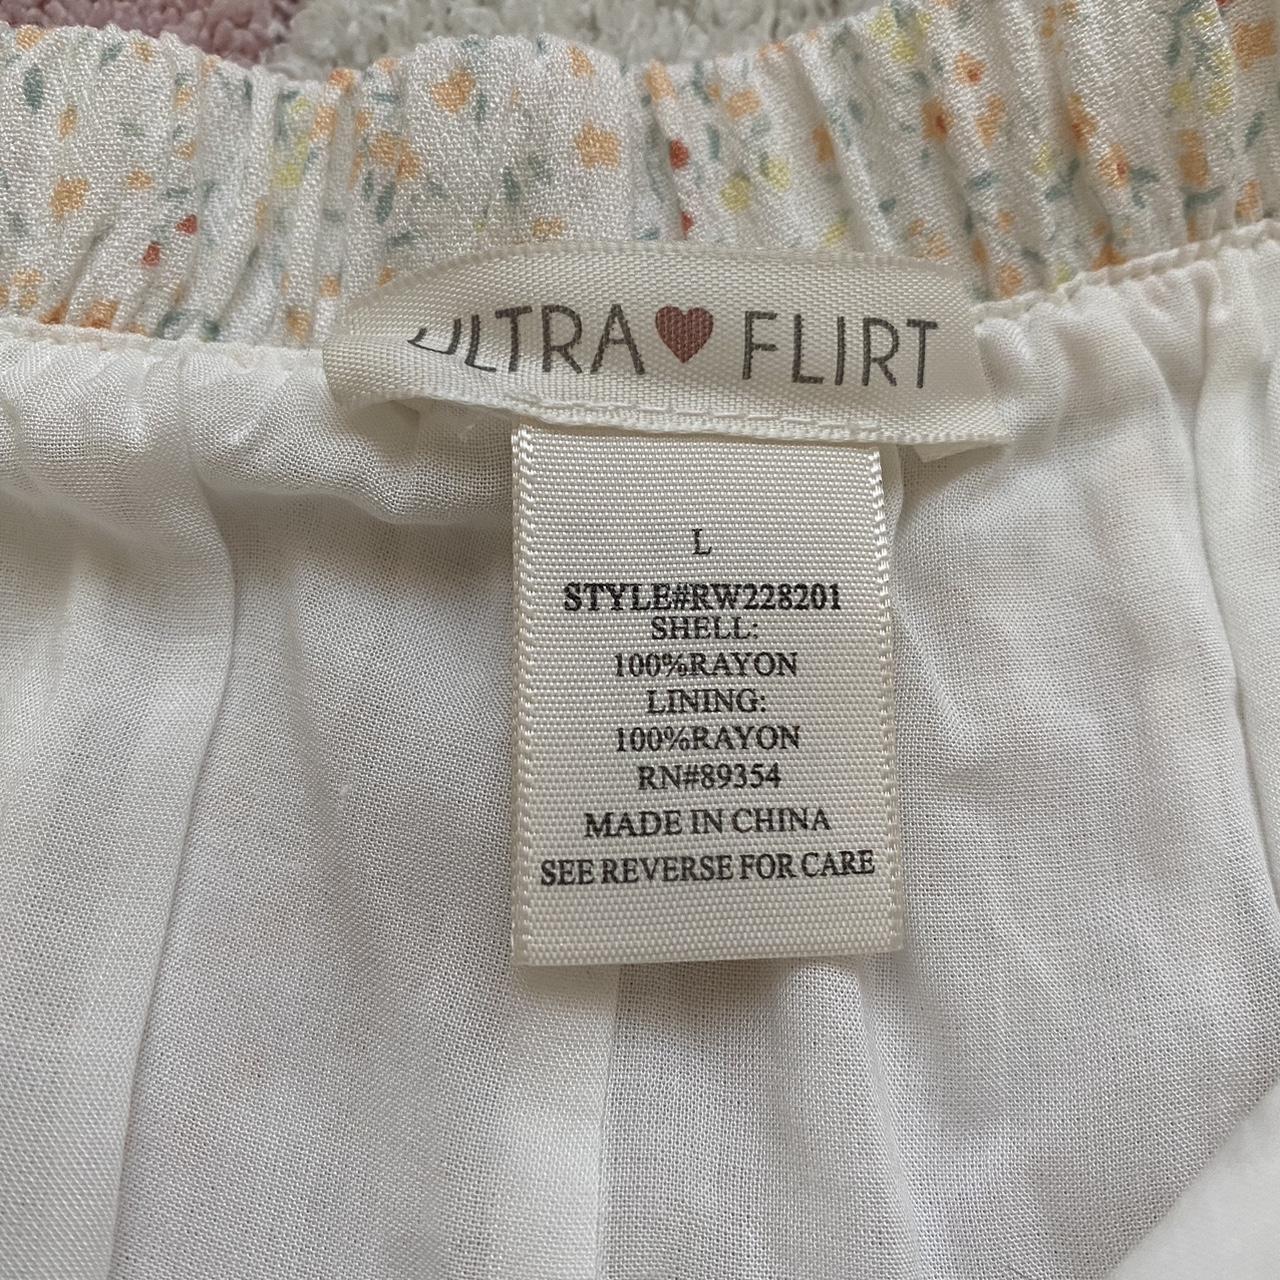 NWT long floral white ultra flirt skirt